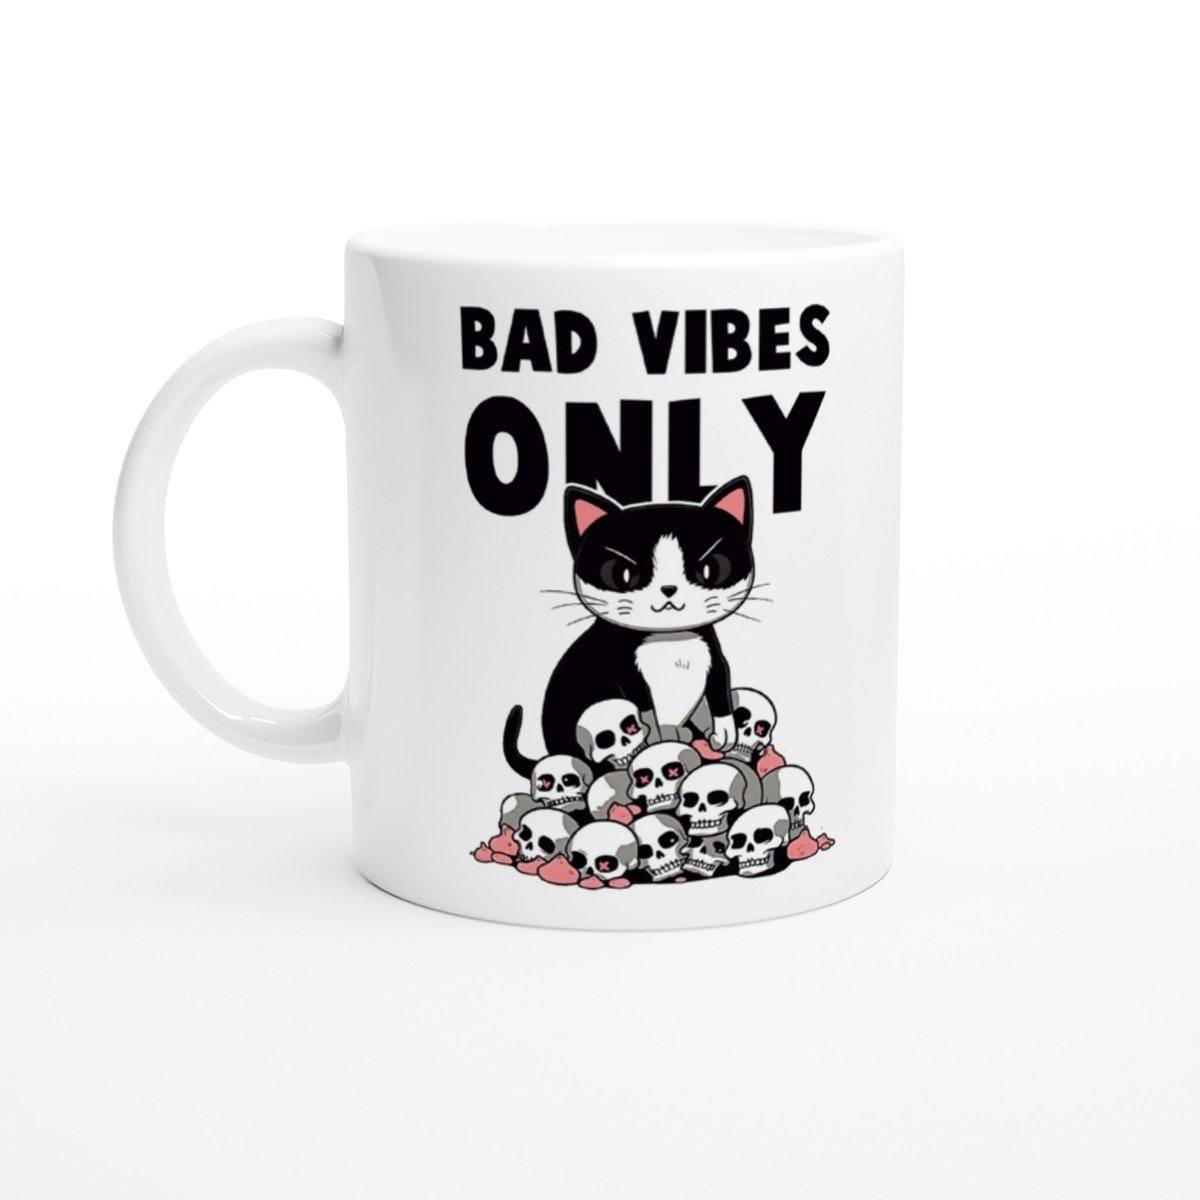 Bad Vibes Only Mug Australia Online Color